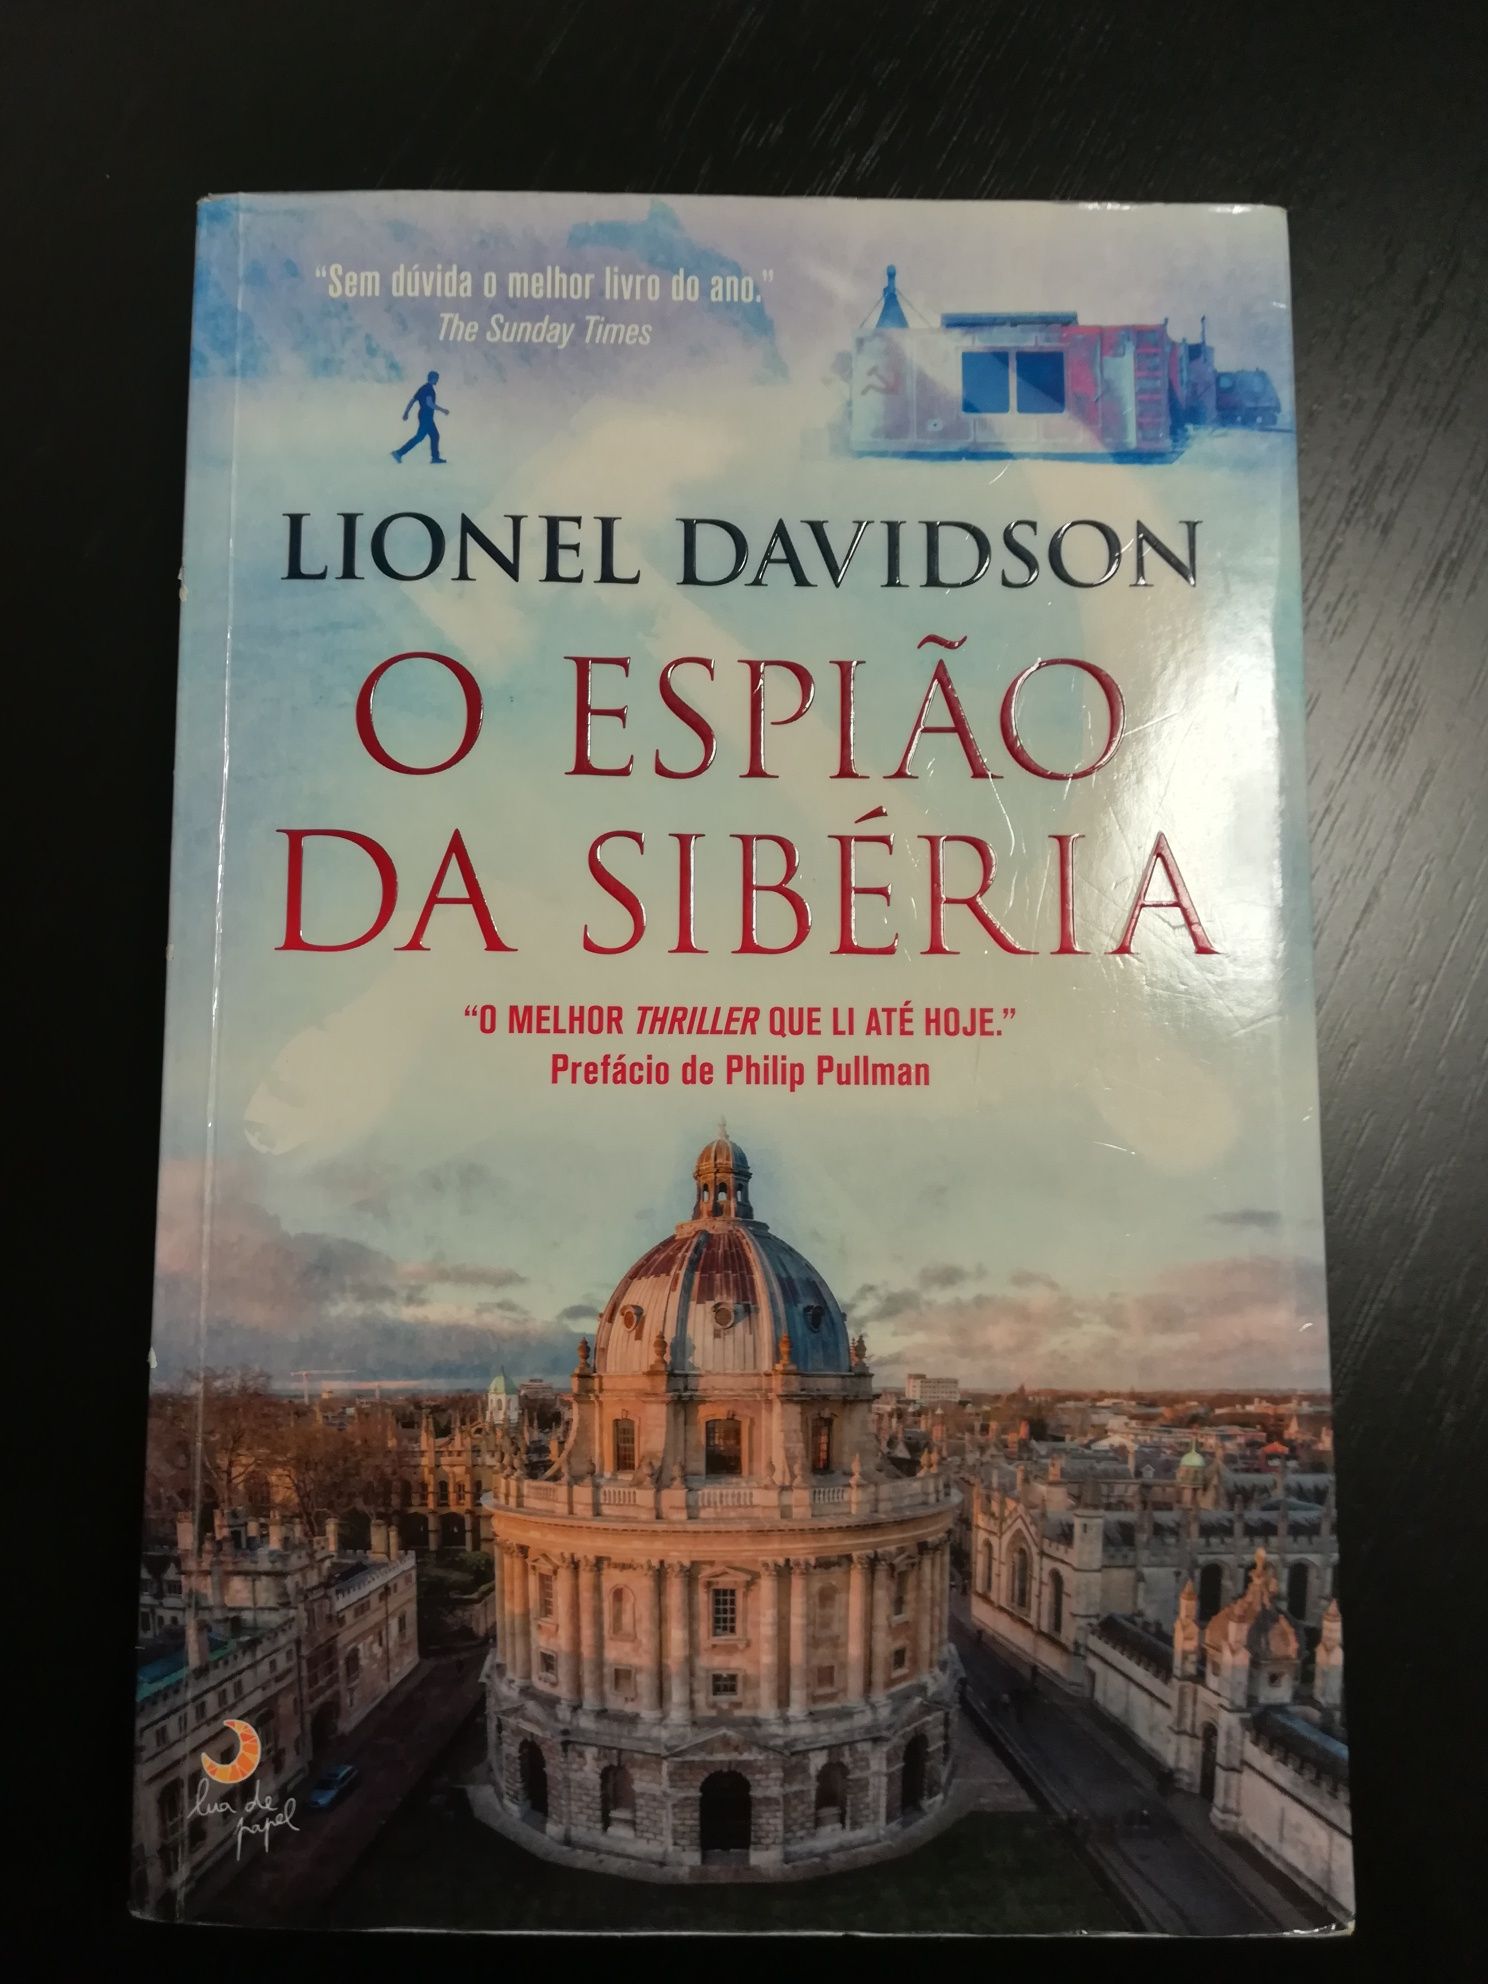 O Espião da Sibéria de Lionel Davidson